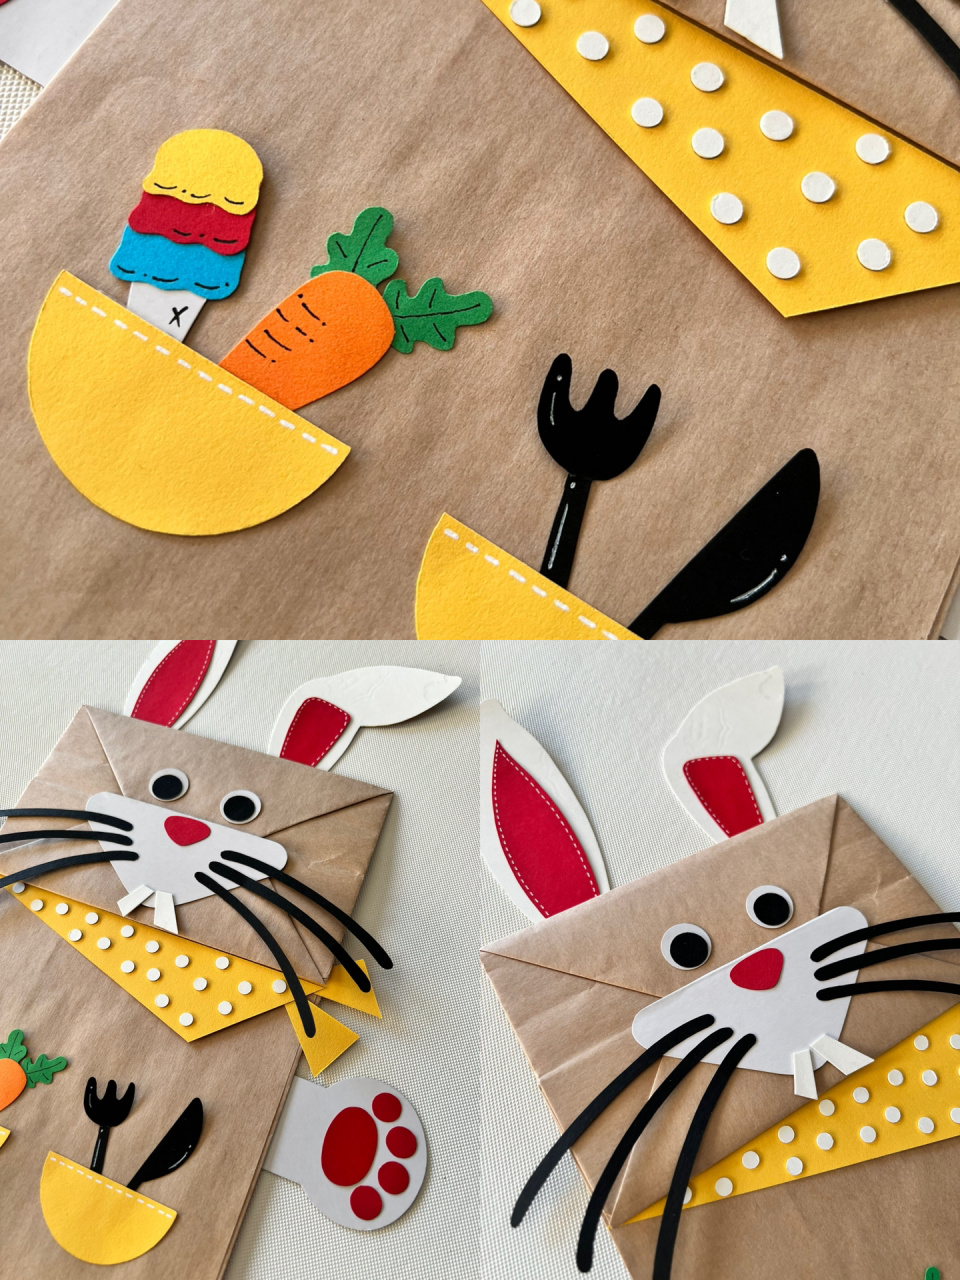 diy创意动物纸袋手偶《十二生肖—兔》 材料:牛皮纸袋,彩色卡纸,双面